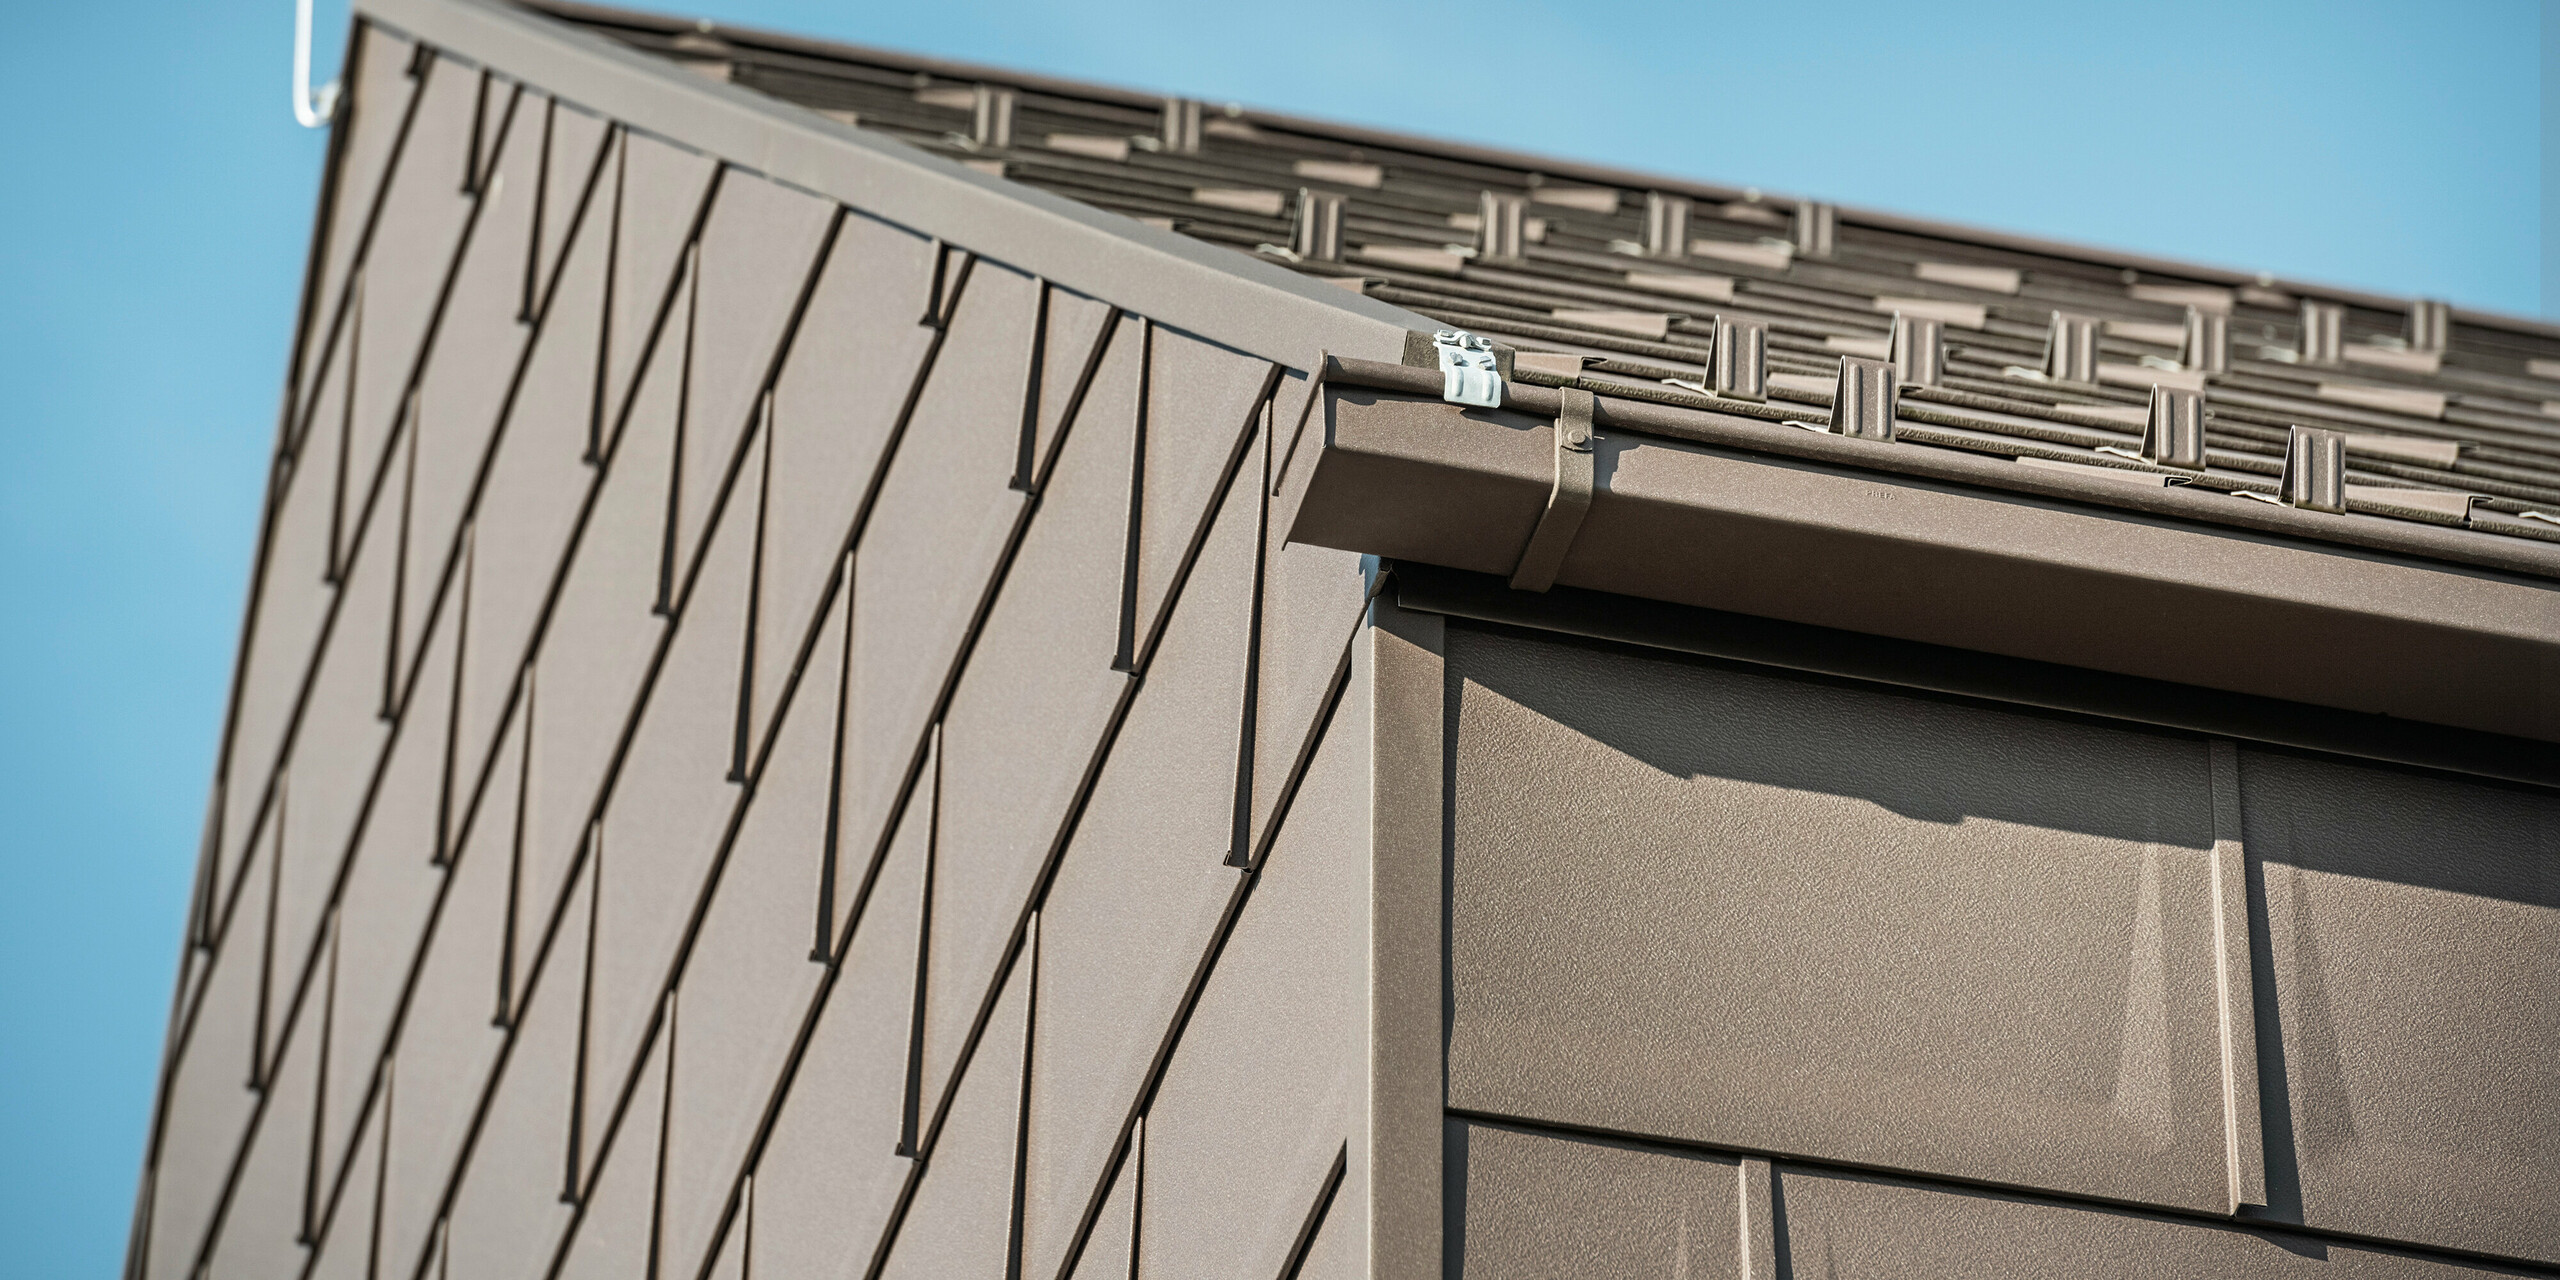 Detailaufnahme der Dachentwässerung eines Einfamilienhauses in Neukirchen, Österreich, mit einer PREFA Kastenrinne. Die Dachplatte R.16 in P.10 Braun bildet nicht nur das Dach, sondern ziert auch die Fassade, was ein durchgängiges und elegantes Erscheinungsbild schafft. Diese Nahaufnahme zeigt die Präzision und Qualität der PREFA-Aluminiumprodukte, die Design mit Funktionalität für ein modernes Wohnkonzept verbinden.